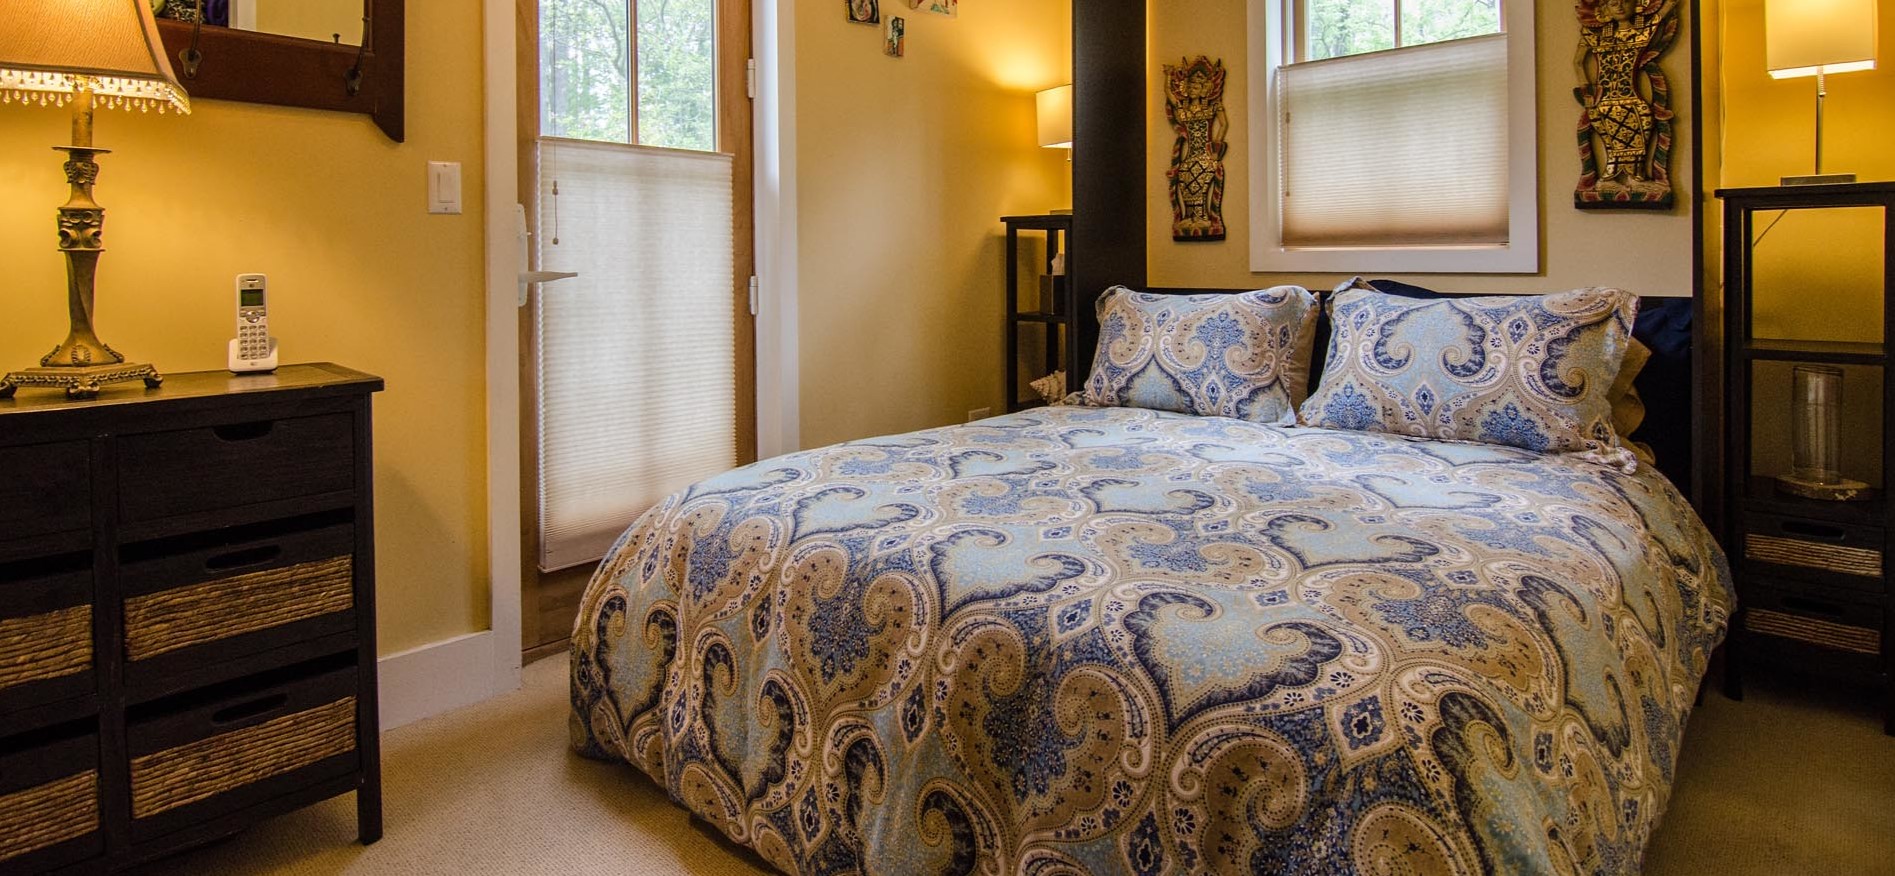 Кровать можно украсить оригинальным постельным бельем с орнаментом